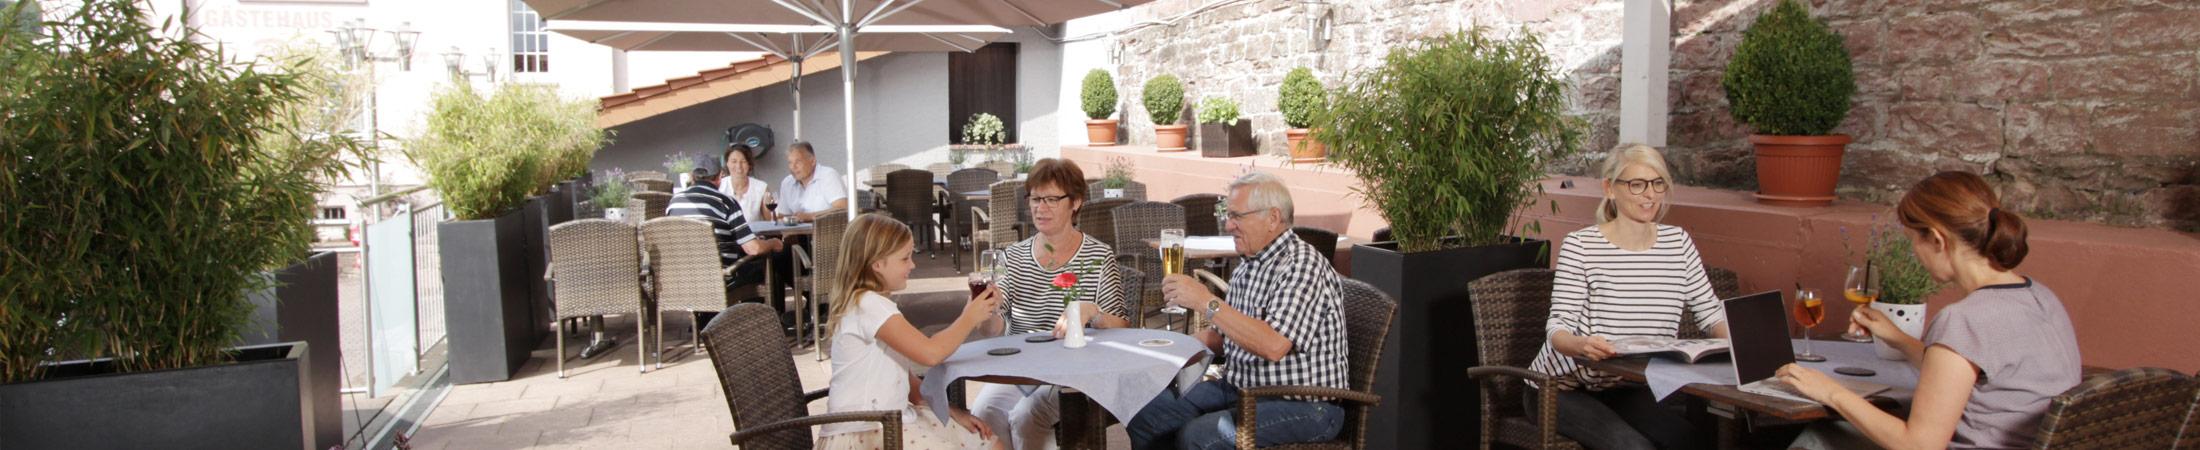 Hotel & Restaurant Reichsadler in Buchen - Beer garden & terrace